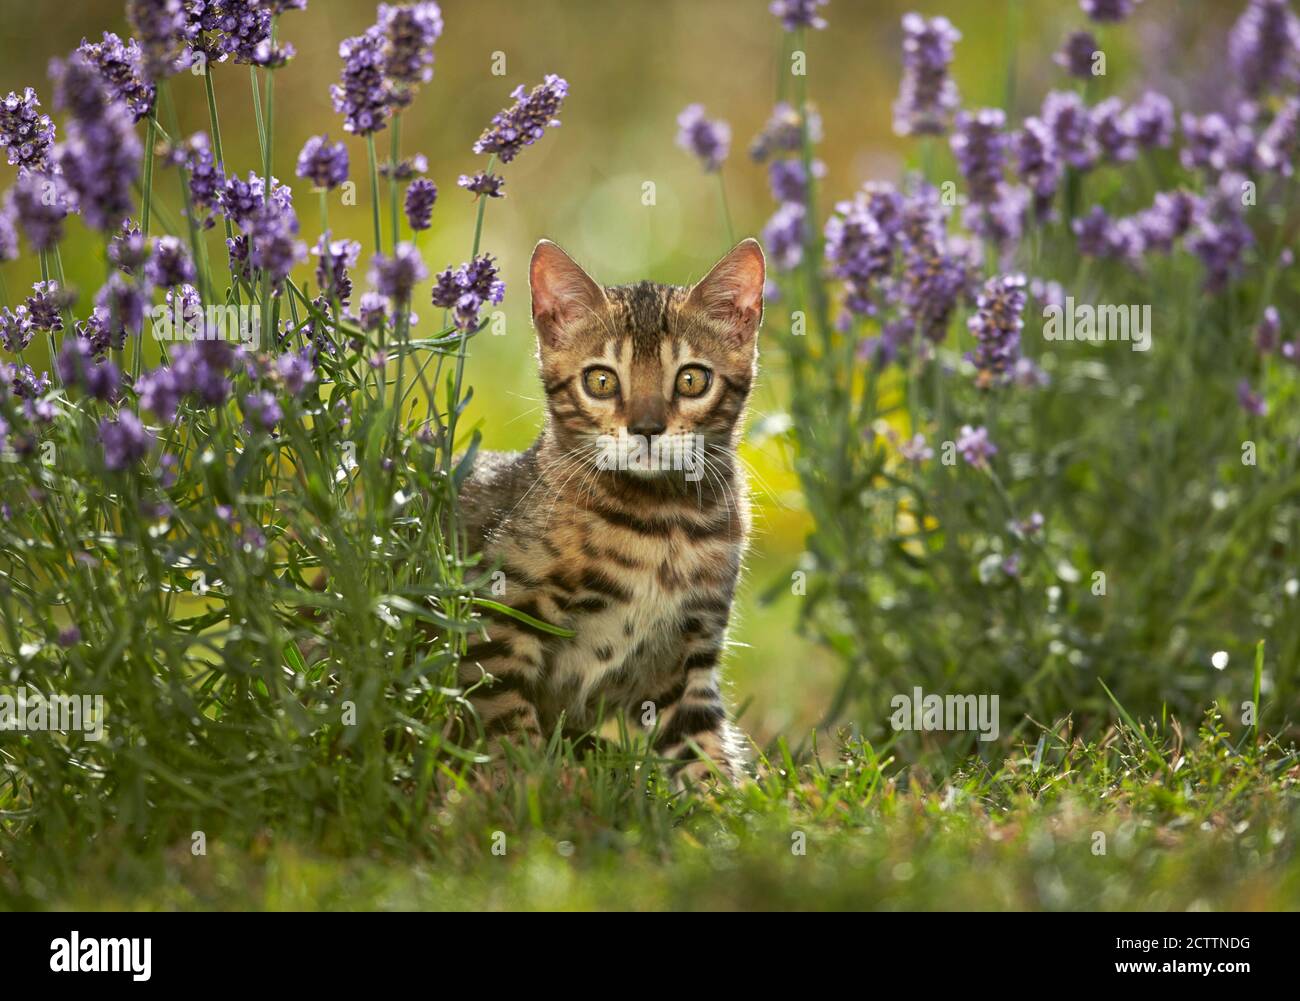 Bengalkatze. Kätzchen in einem Garten inmitten blühender Lavendel. Stockfoto